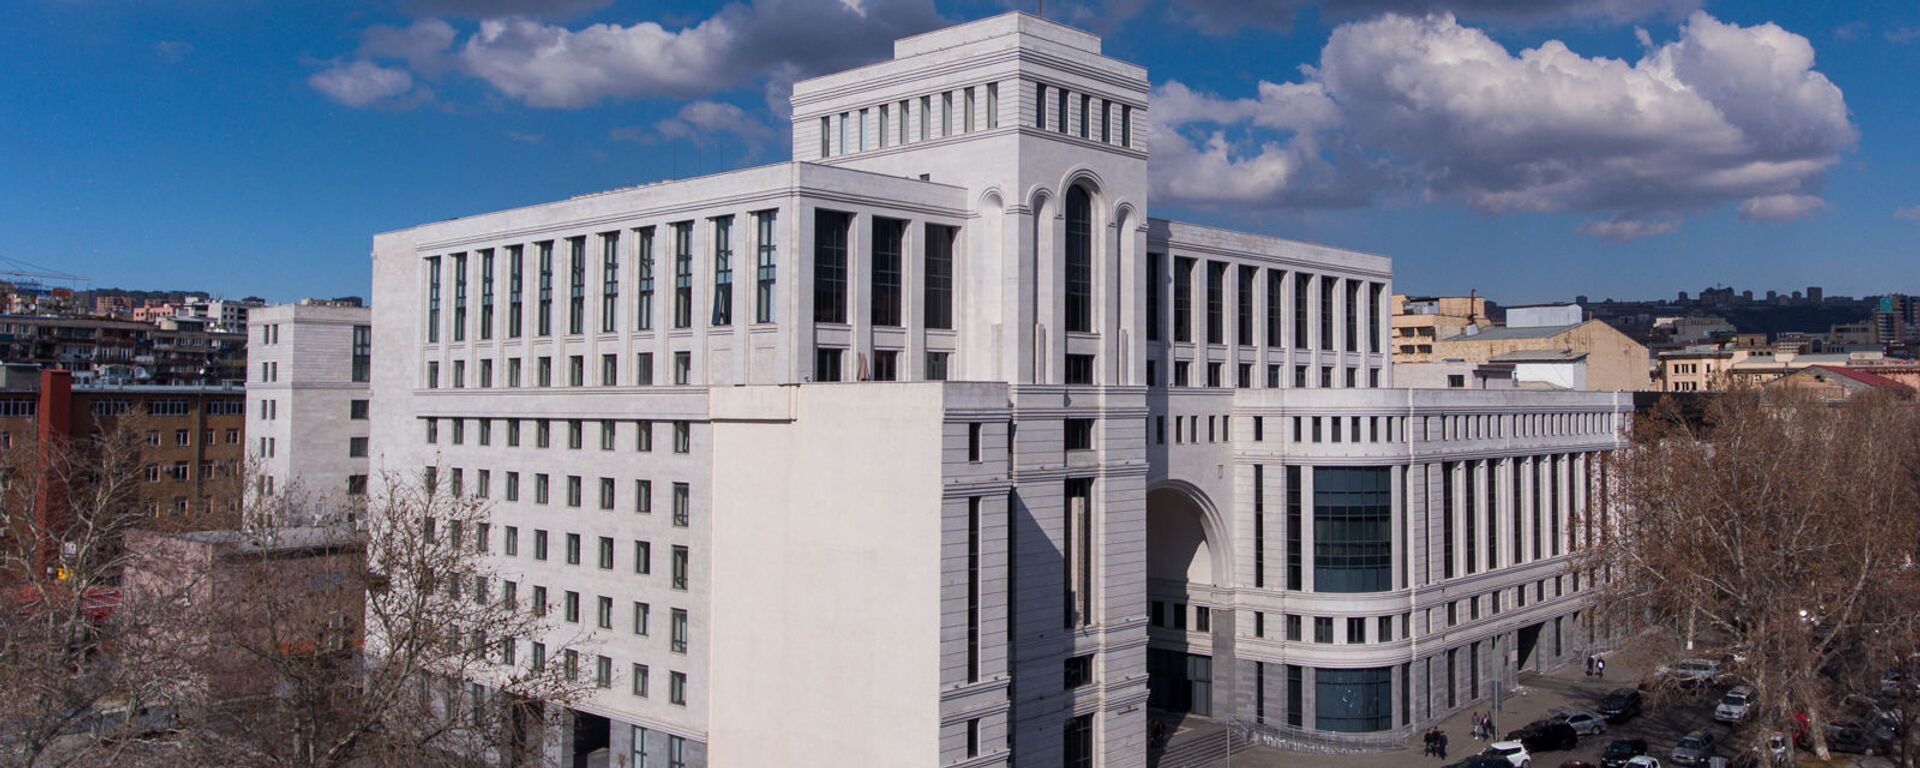 Здание министерства иностранных дел Армении - Sputnik Արմենիա, 1920, 17.05.2021